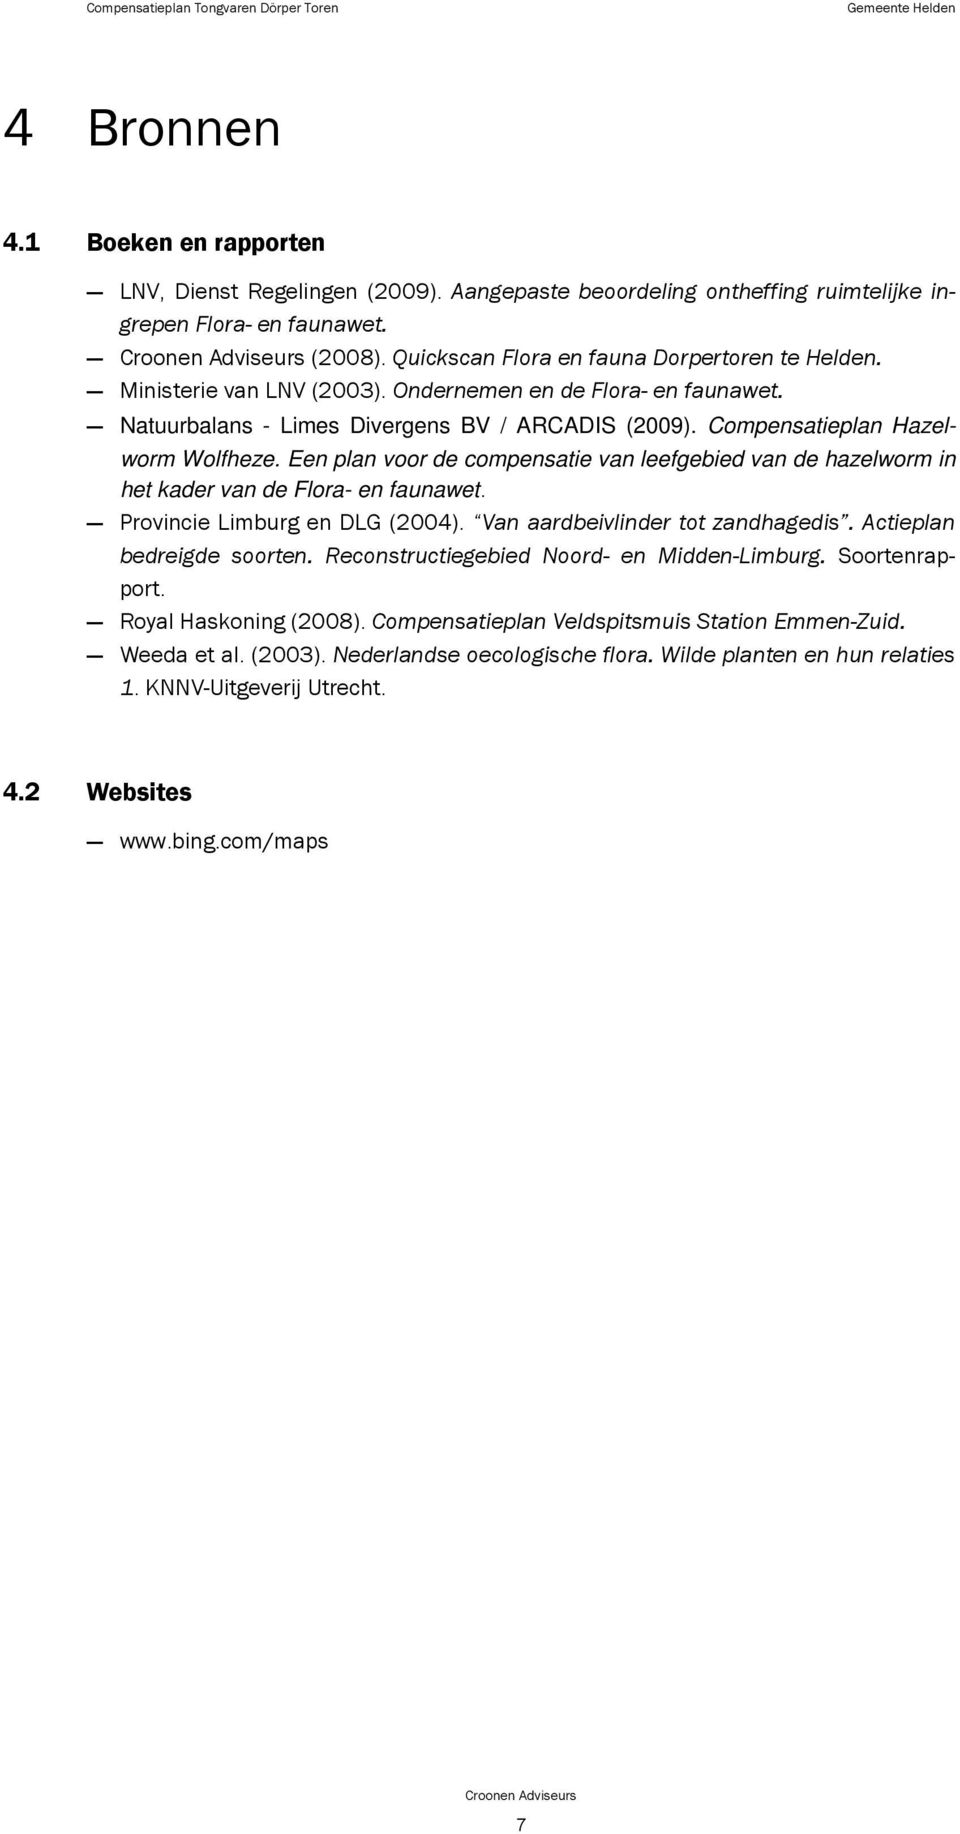 Compensatieplan Hazelworm Wolfheze. Een plan voor de compensatie van leefgebied van de hazelworm in het kader van de Flora- en faunawet. Provincie Limburg en DLG (2004).